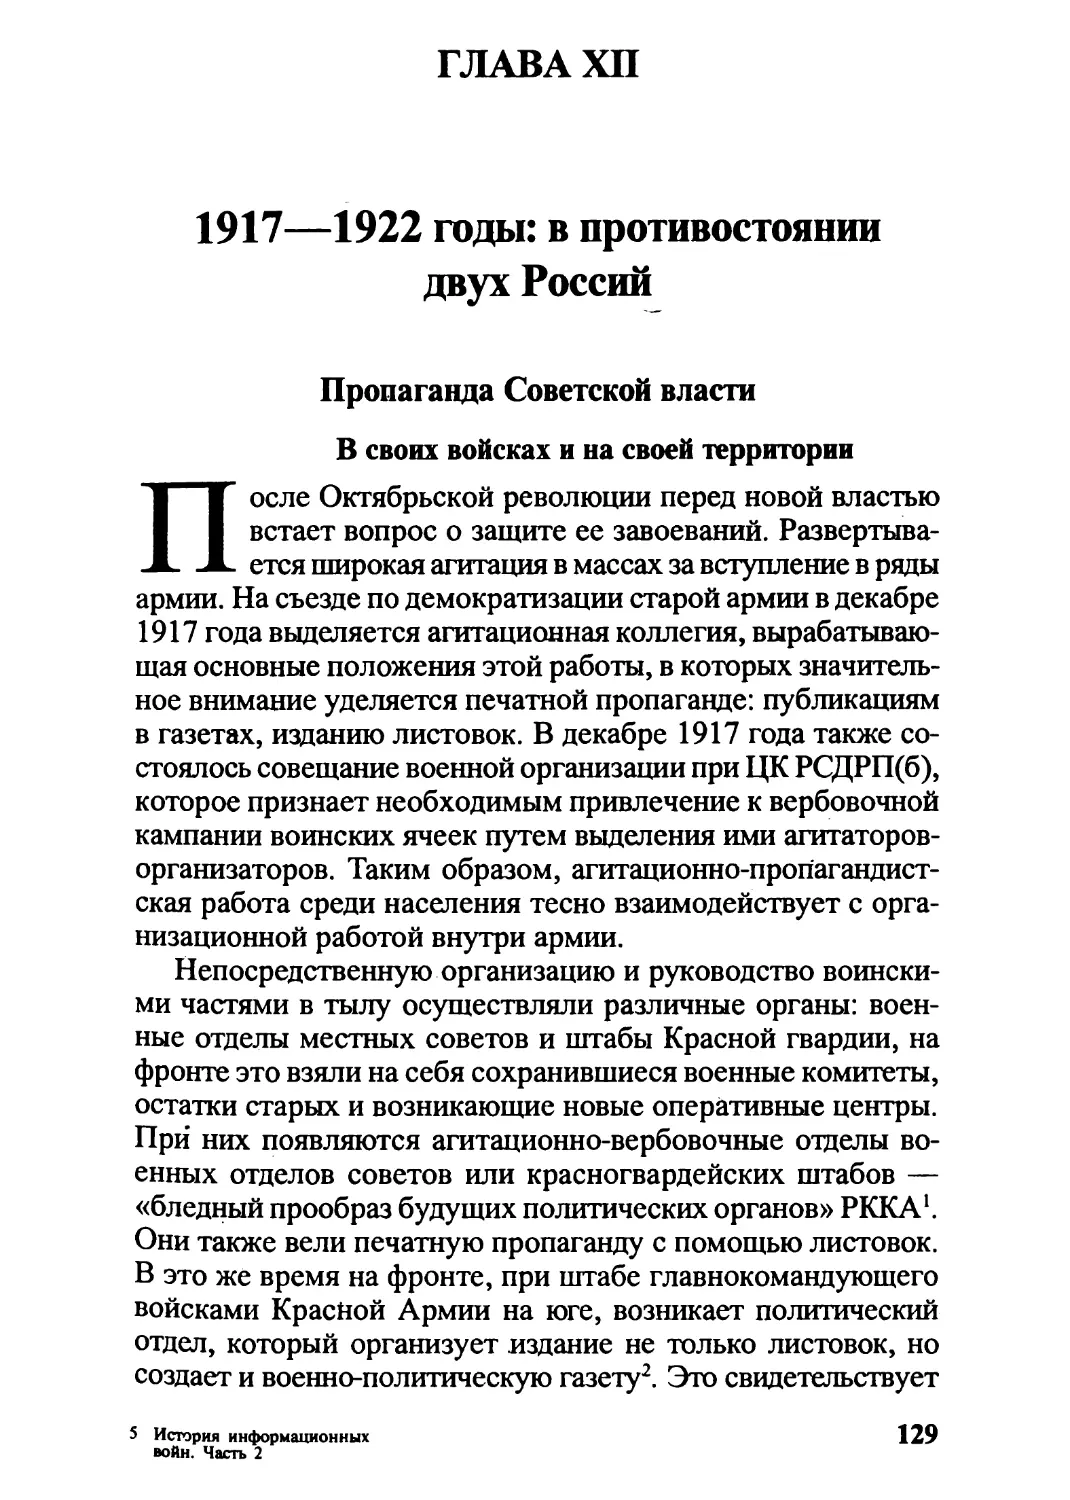 Глава XII. 1917—1922 годы: в противостоянии двух Россий